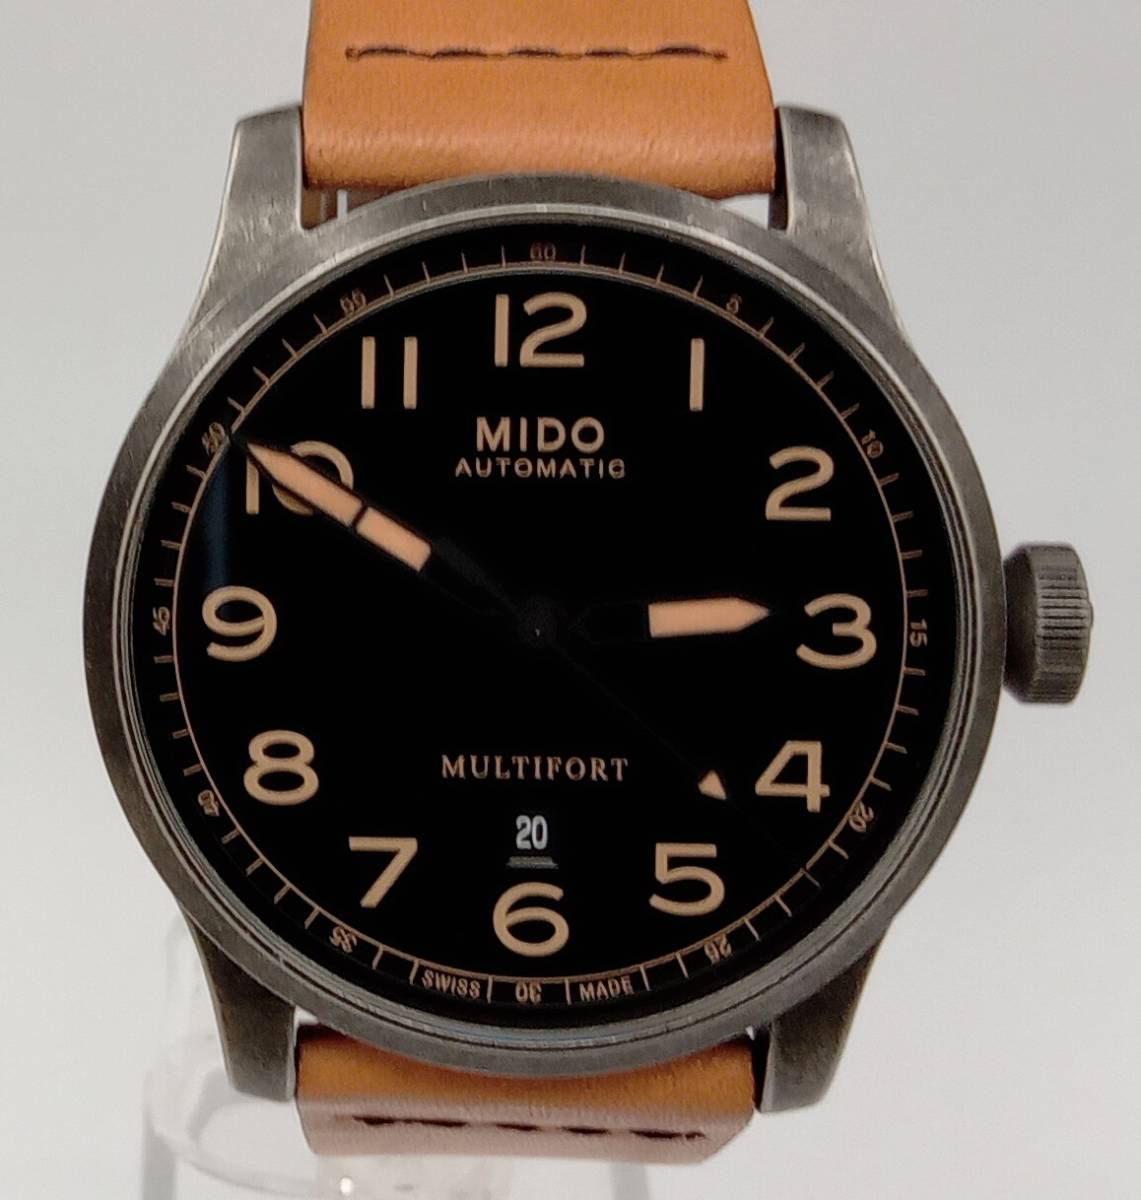 Mido マルチフォート エスケープ ホーウィン スペシャルエディション M032.607 メンズ腕時計 自動巻き 箱 説明書 交換用ベルト 店舗受取可